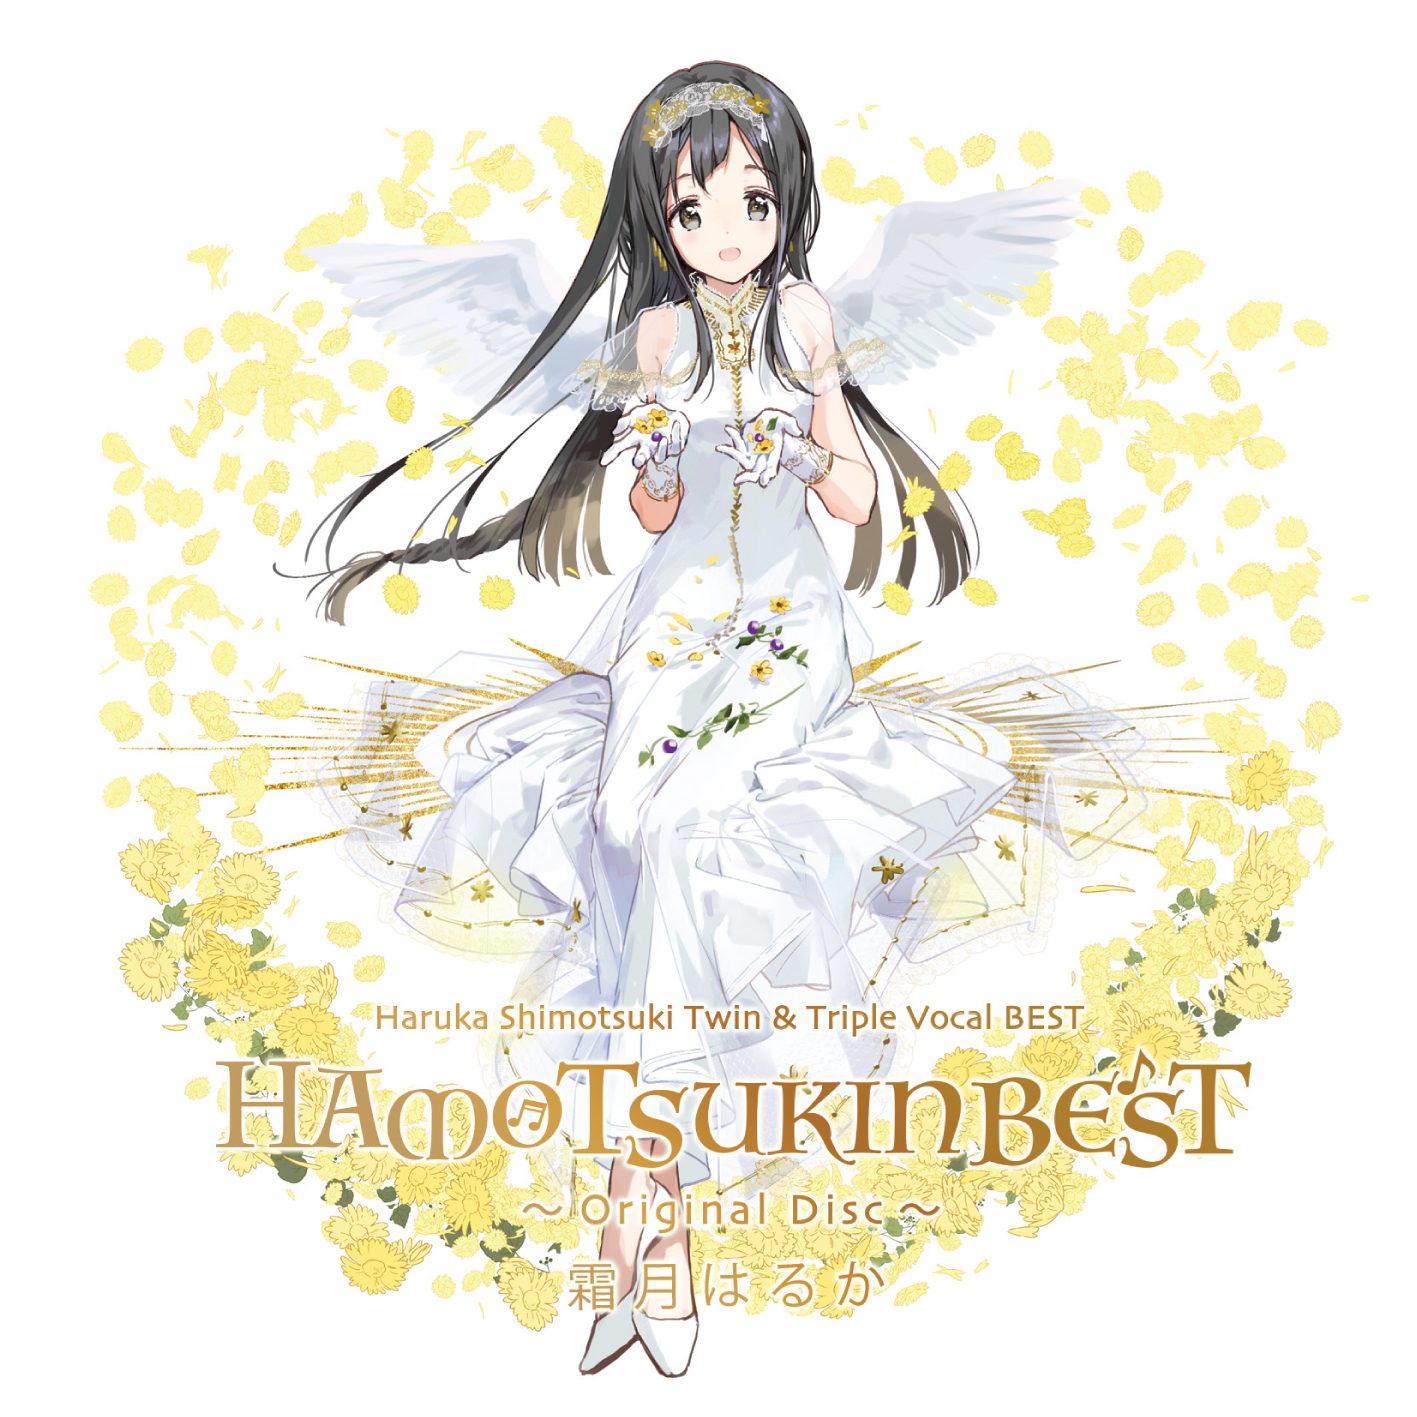 霜月はるかツイン&トリプルボーカルベストアルバム「HAMOTSUKIN BEST~Original Disc~」